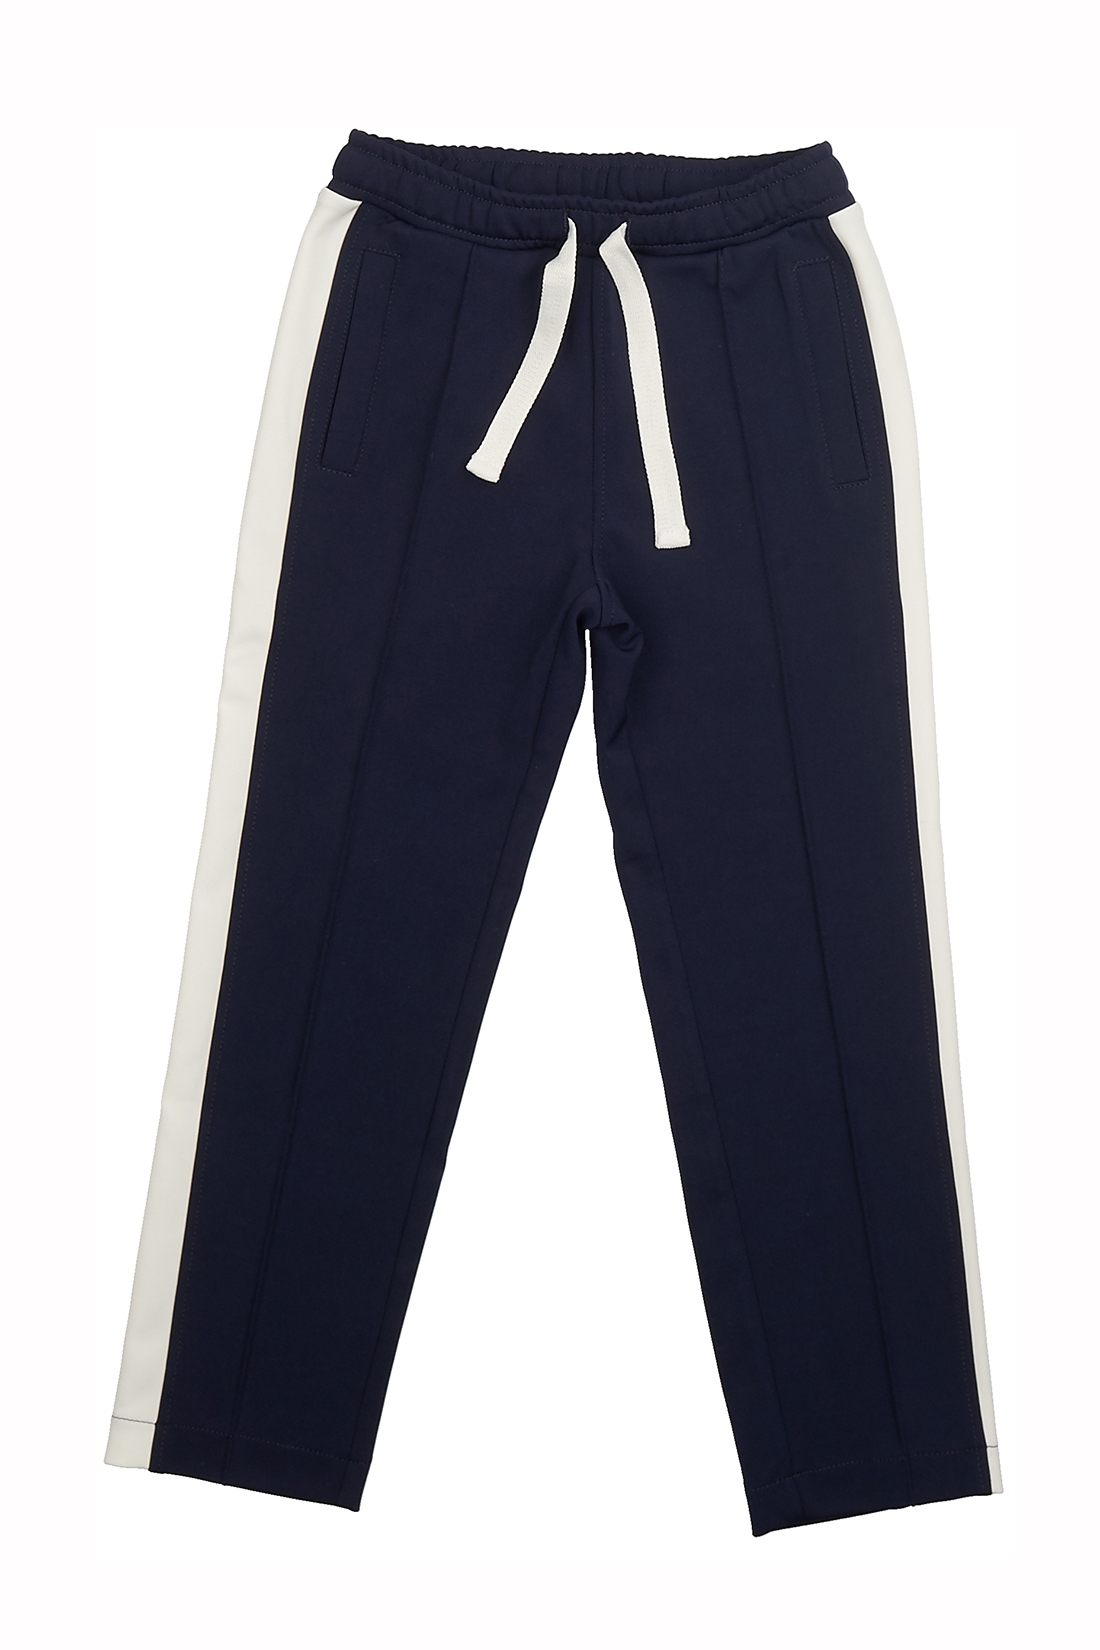 Трикотажные брюки для мальчика (арт. baon BK798004), размер 122-128, цвет синий Трикотажные брюки для мальчика (арт. baon BK798004) - фото 3